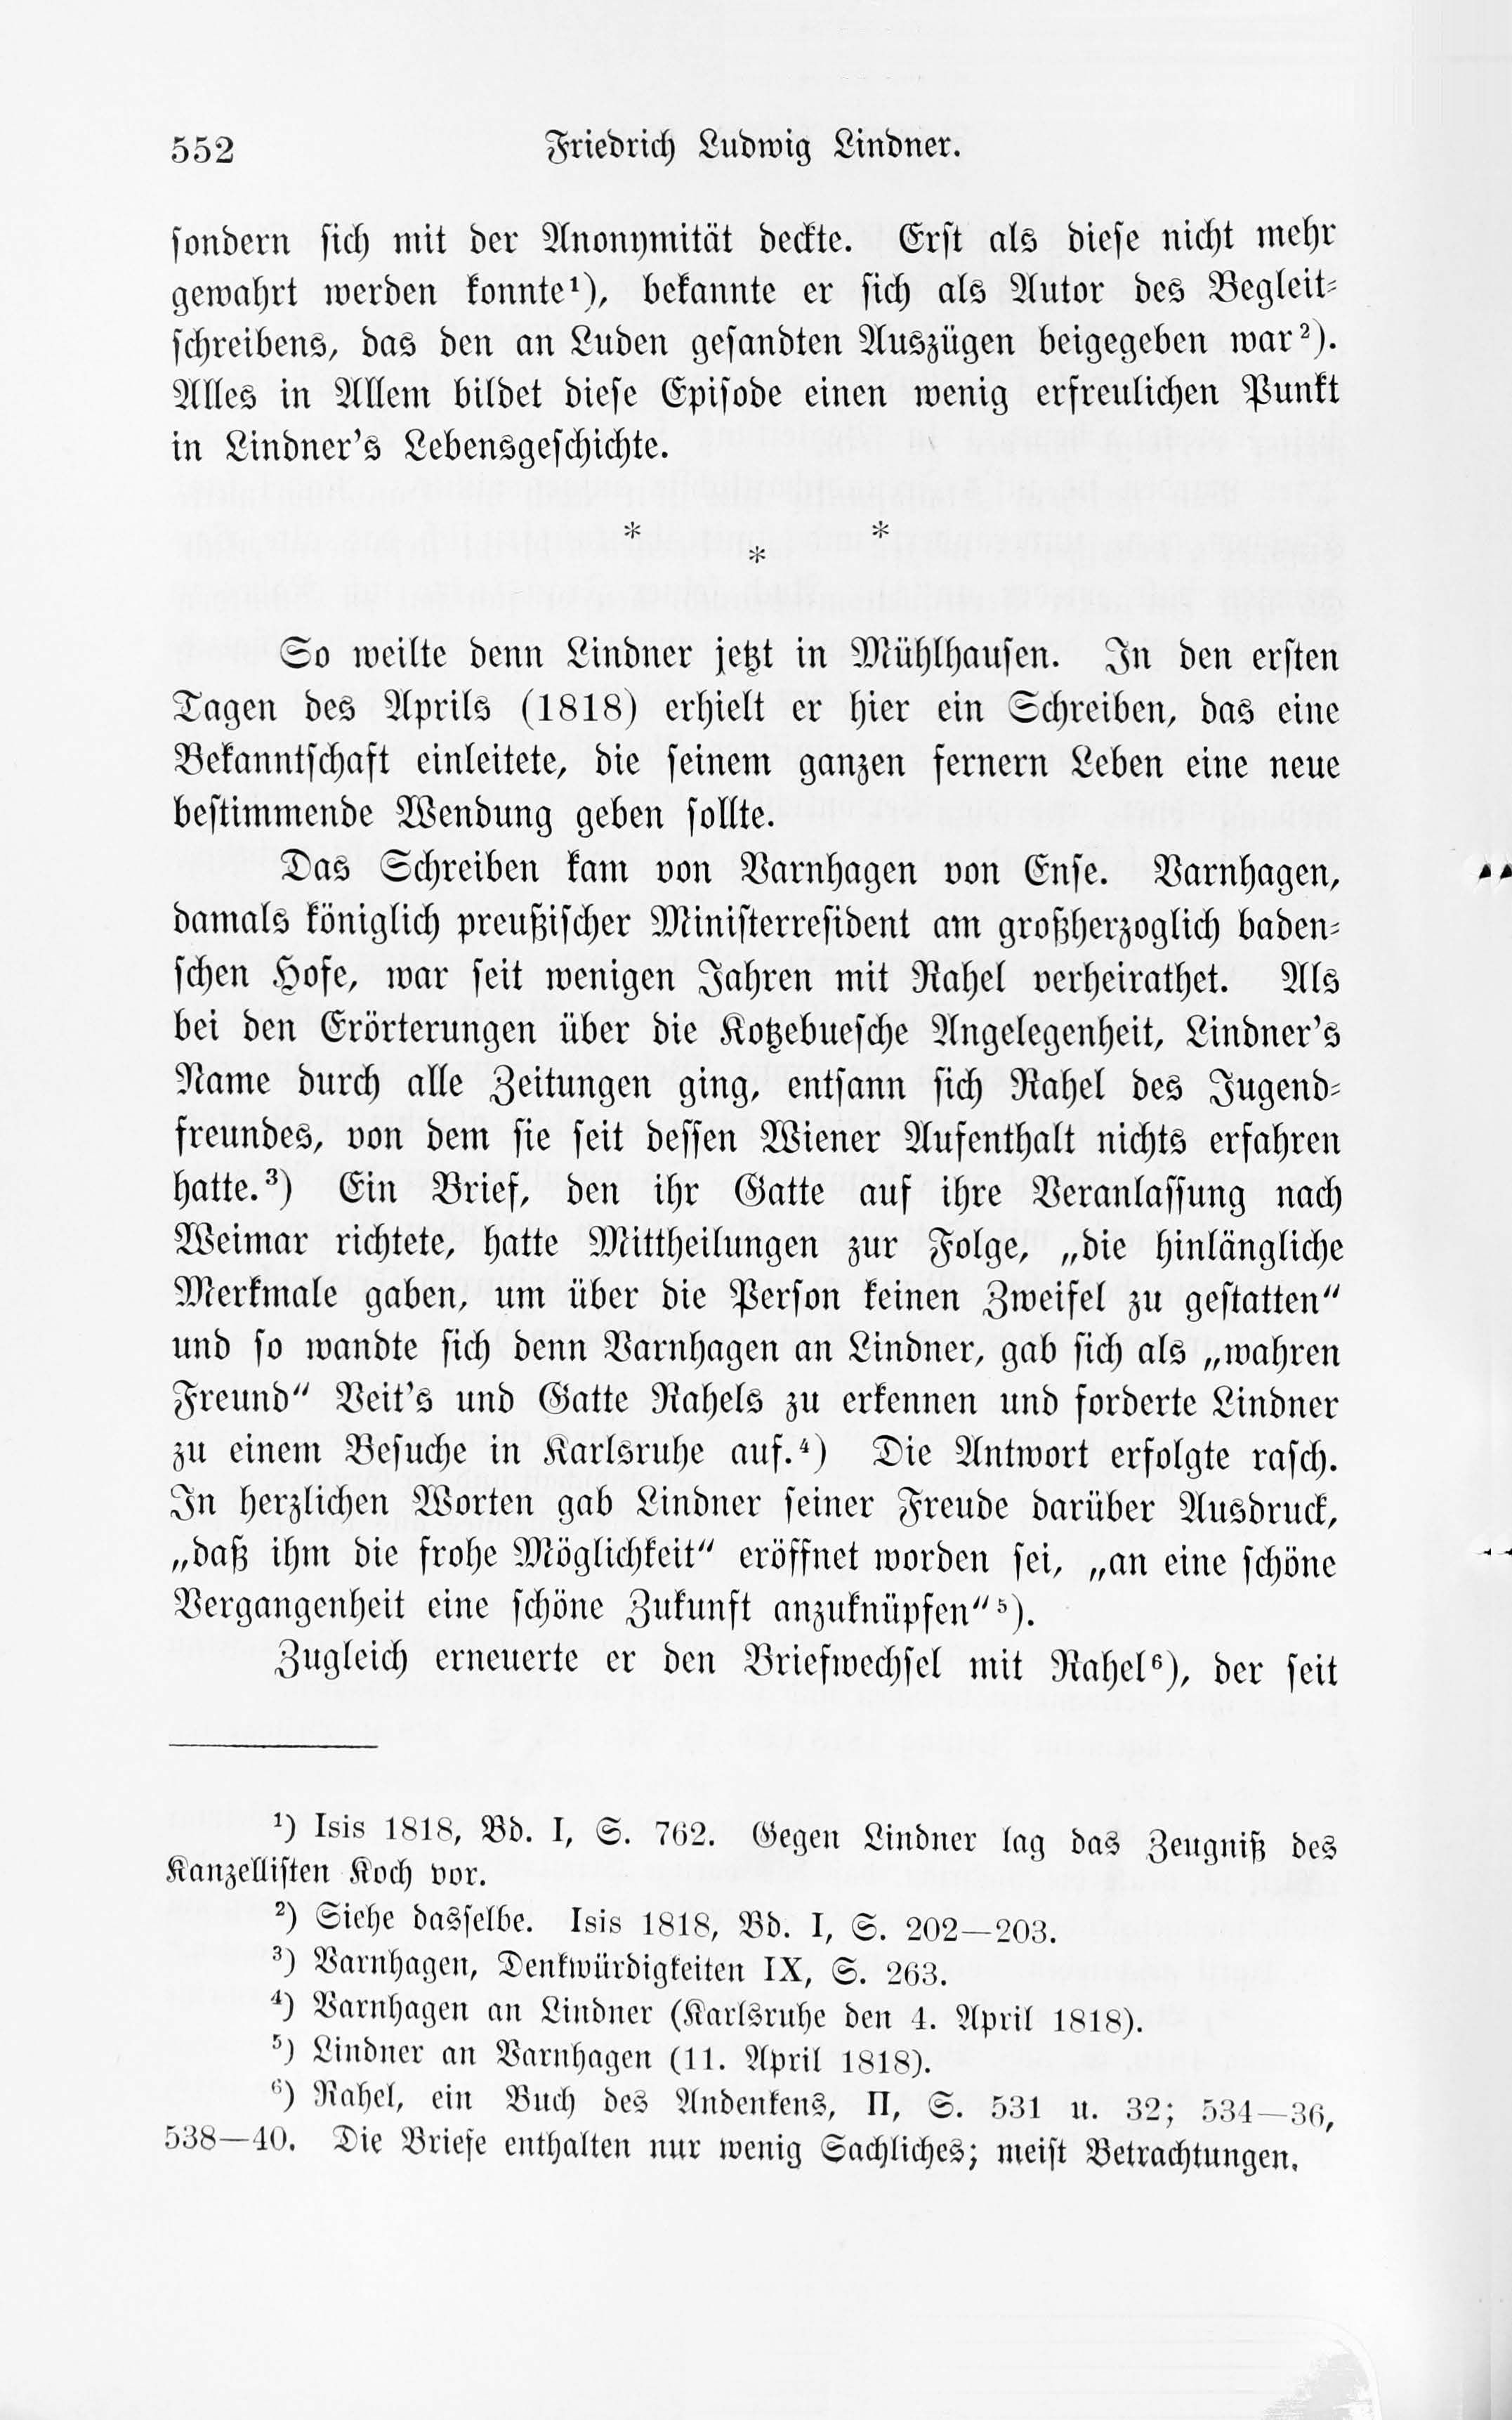 Leben und Schriften des Kurländers Friedrich Ludwig Lindner [1] (1895) | 22. Основной текст